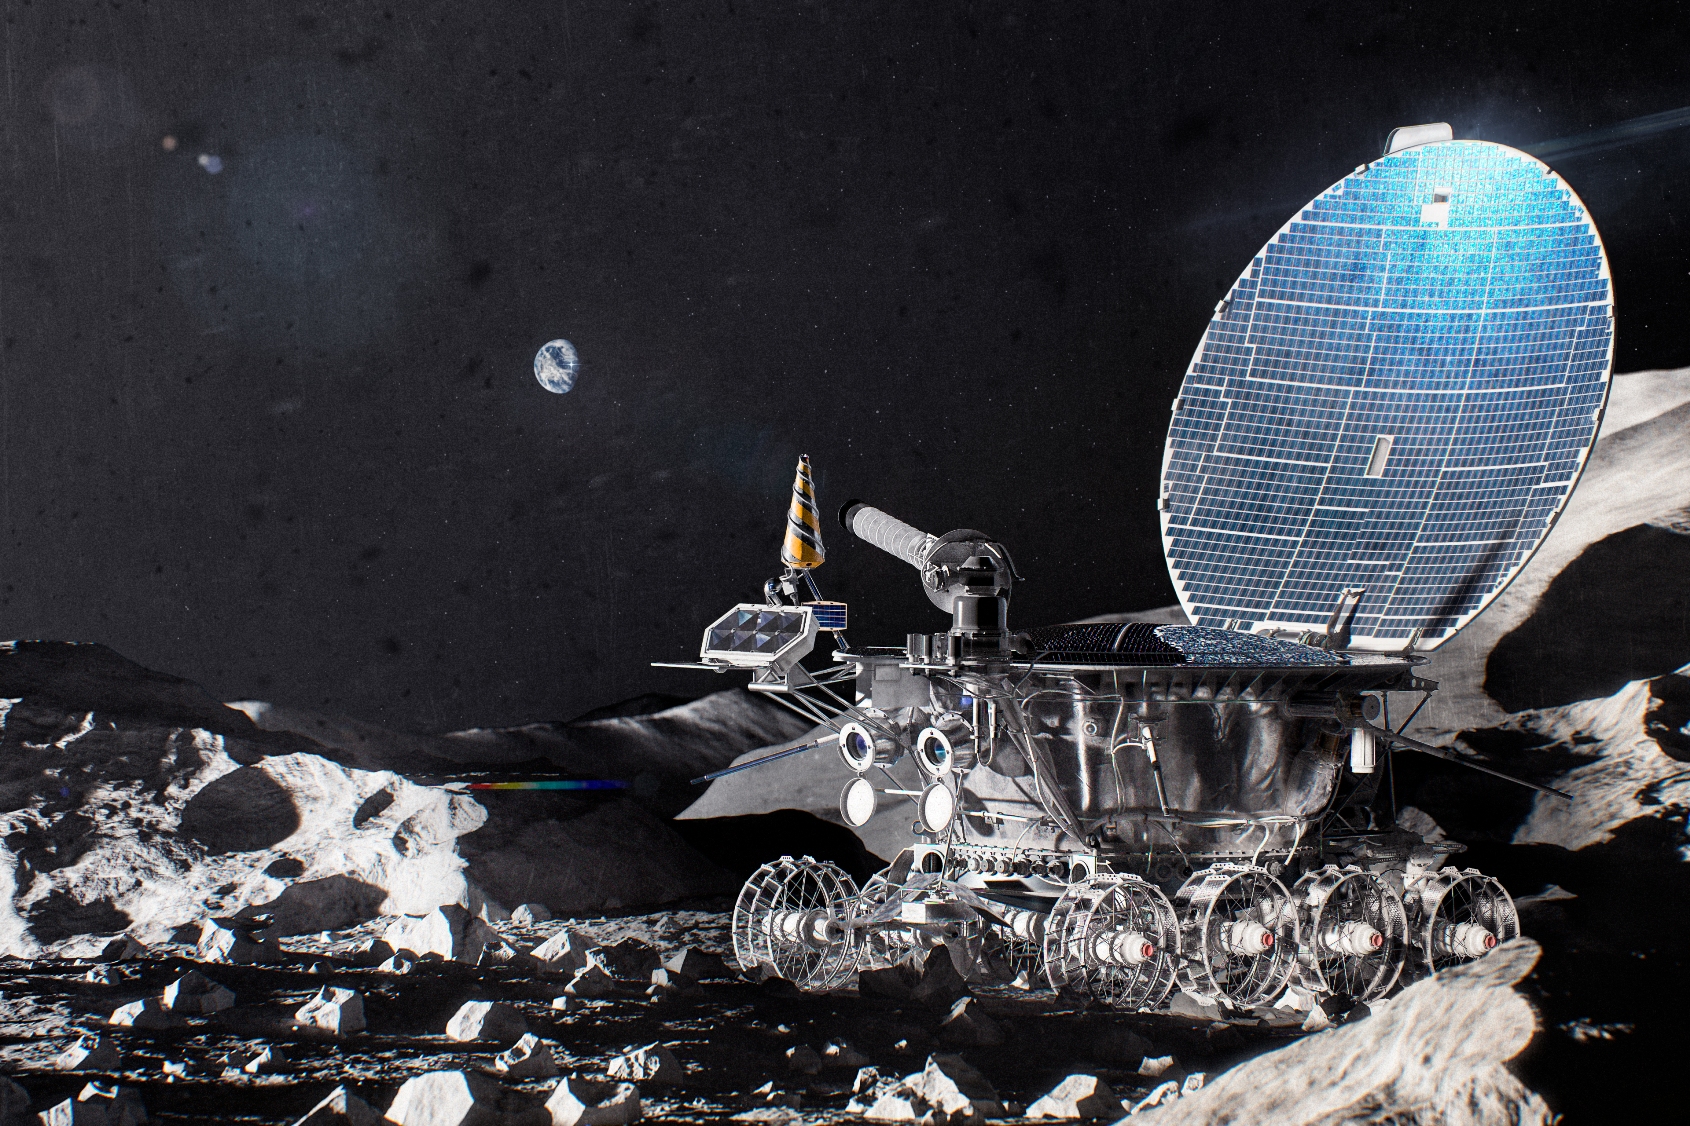 Une vue d'artiste de Lunokhod 1, un robot soviétique qui roula sur la Lune pendant 11 mois. Il se composait de deux parties principales : un boîtier scellé avec des équipements scientifiques et de service et un châssis. Il avait la forme d'une « casserole » d'un diamètre d'environ 2 mètres, recouverte d'une sorte couvercle portant des cellules solaire. © Alexey Ryabov, CC by-sa 4.0, Wikipedia